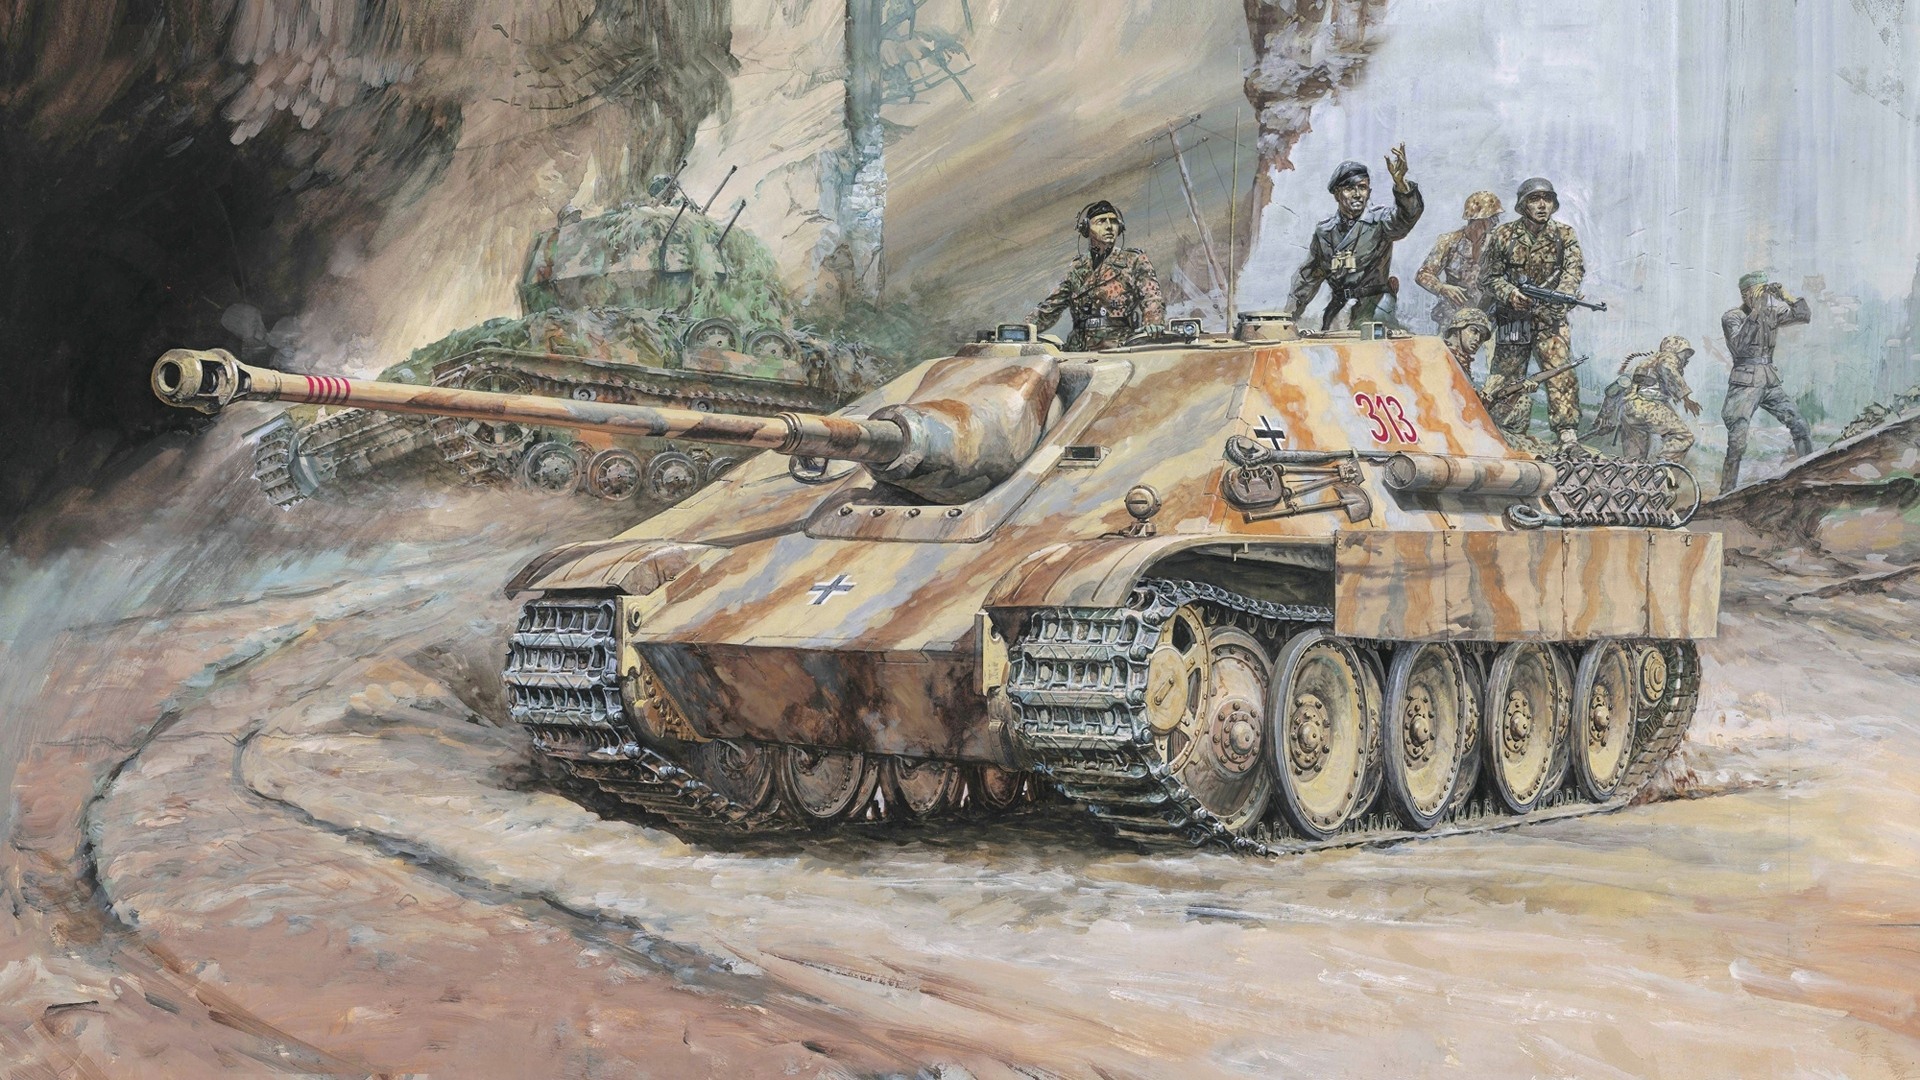 軍の戦車 装甲hdの絵画壁紙 4 19x1080 壁紙ダウンロード 軍の戦車 装甲hdの絵画壁紙 ミリタリー 壁紙 V3の壁紙